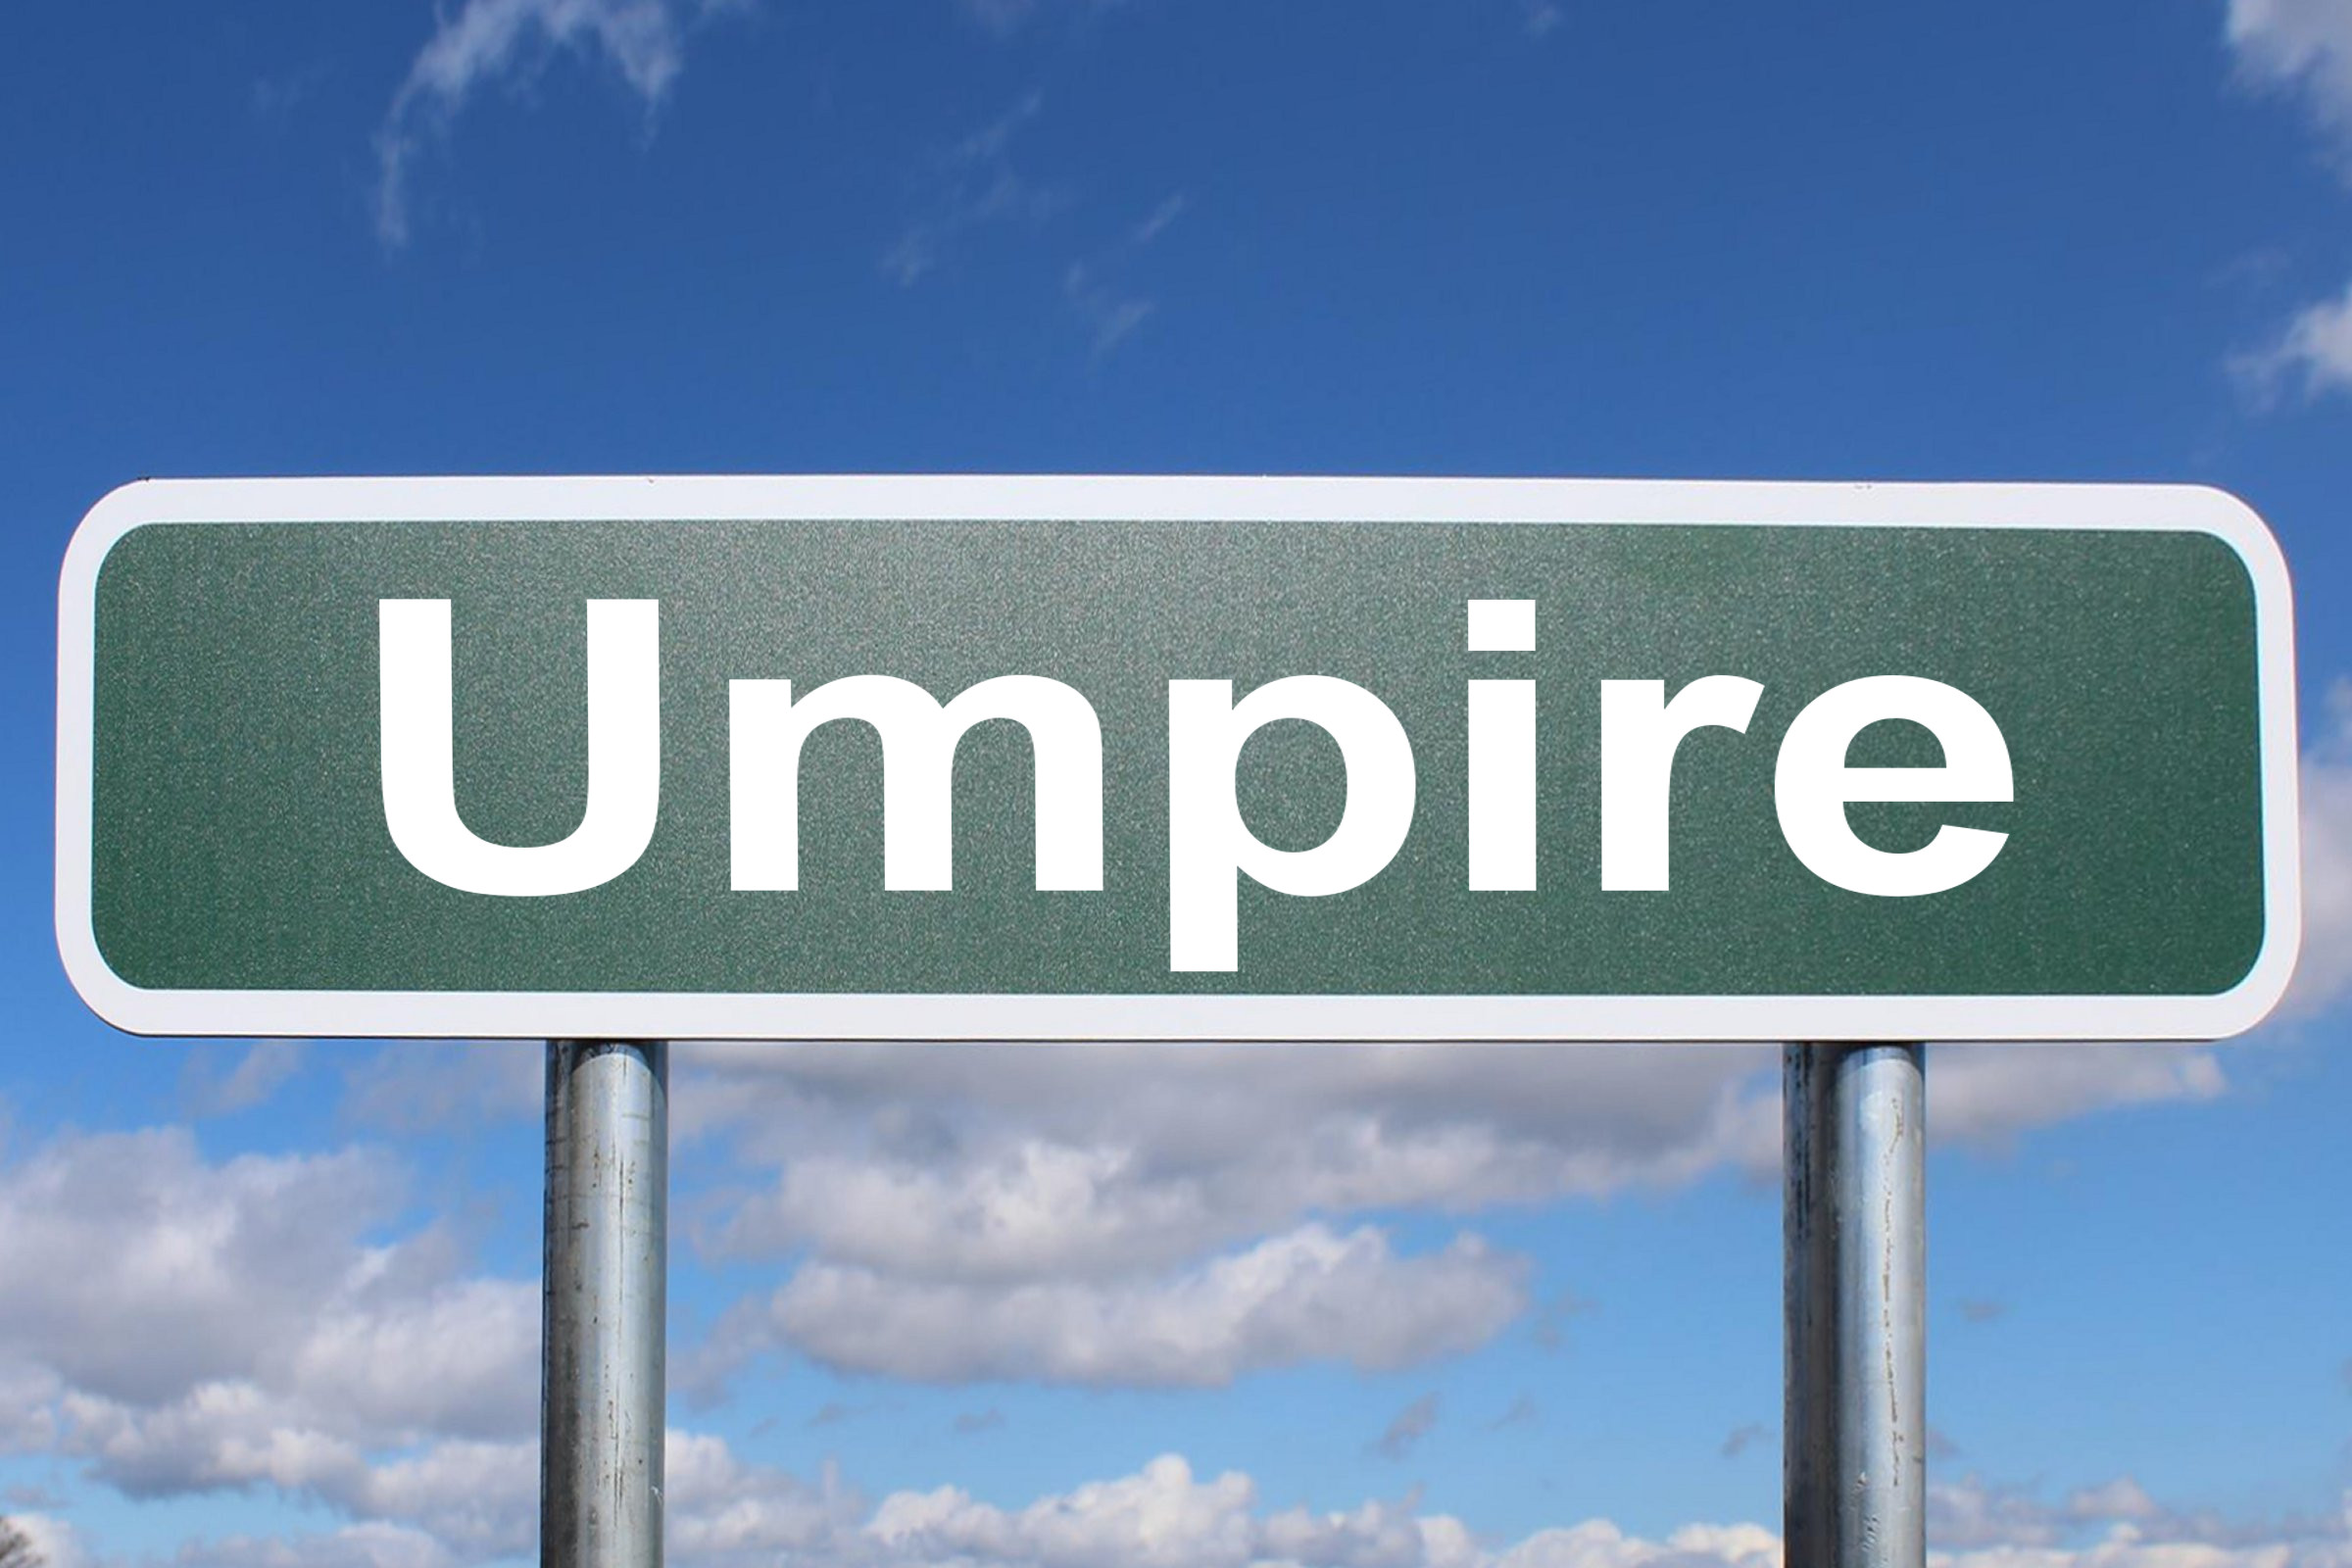 umpire